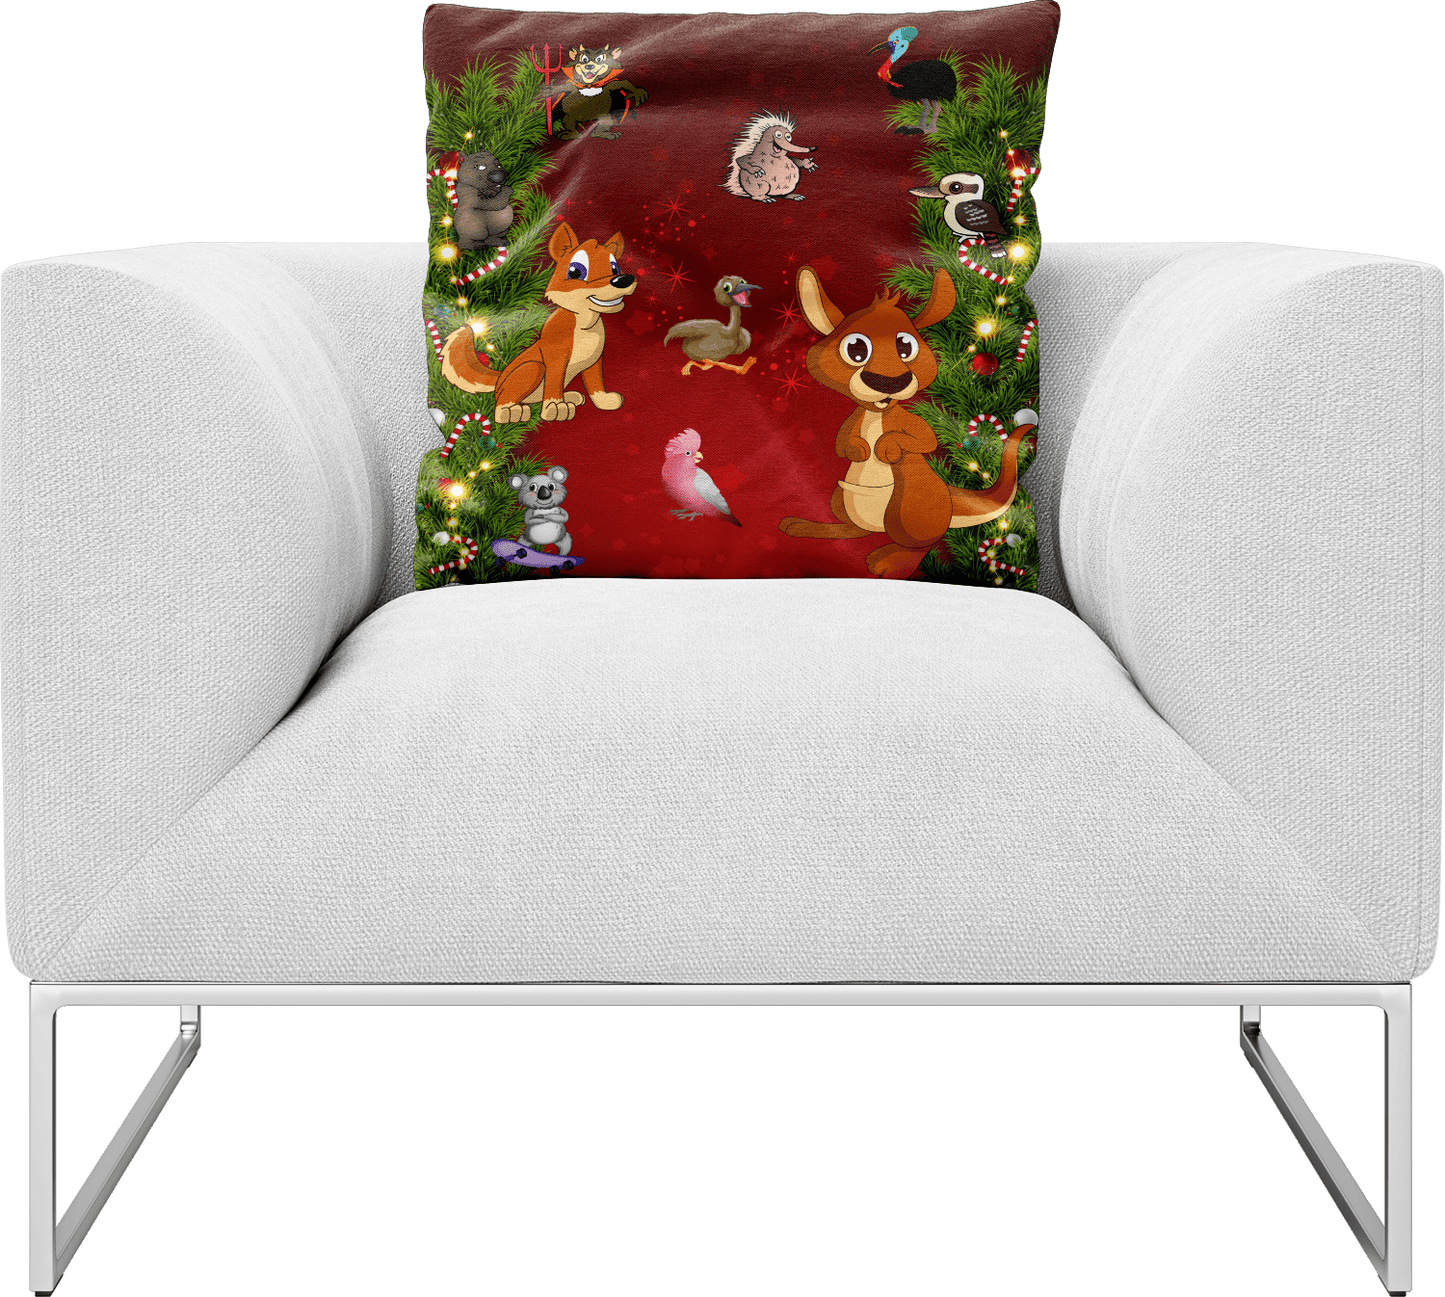 Xmas Pillows Cushions - fungear.com.au